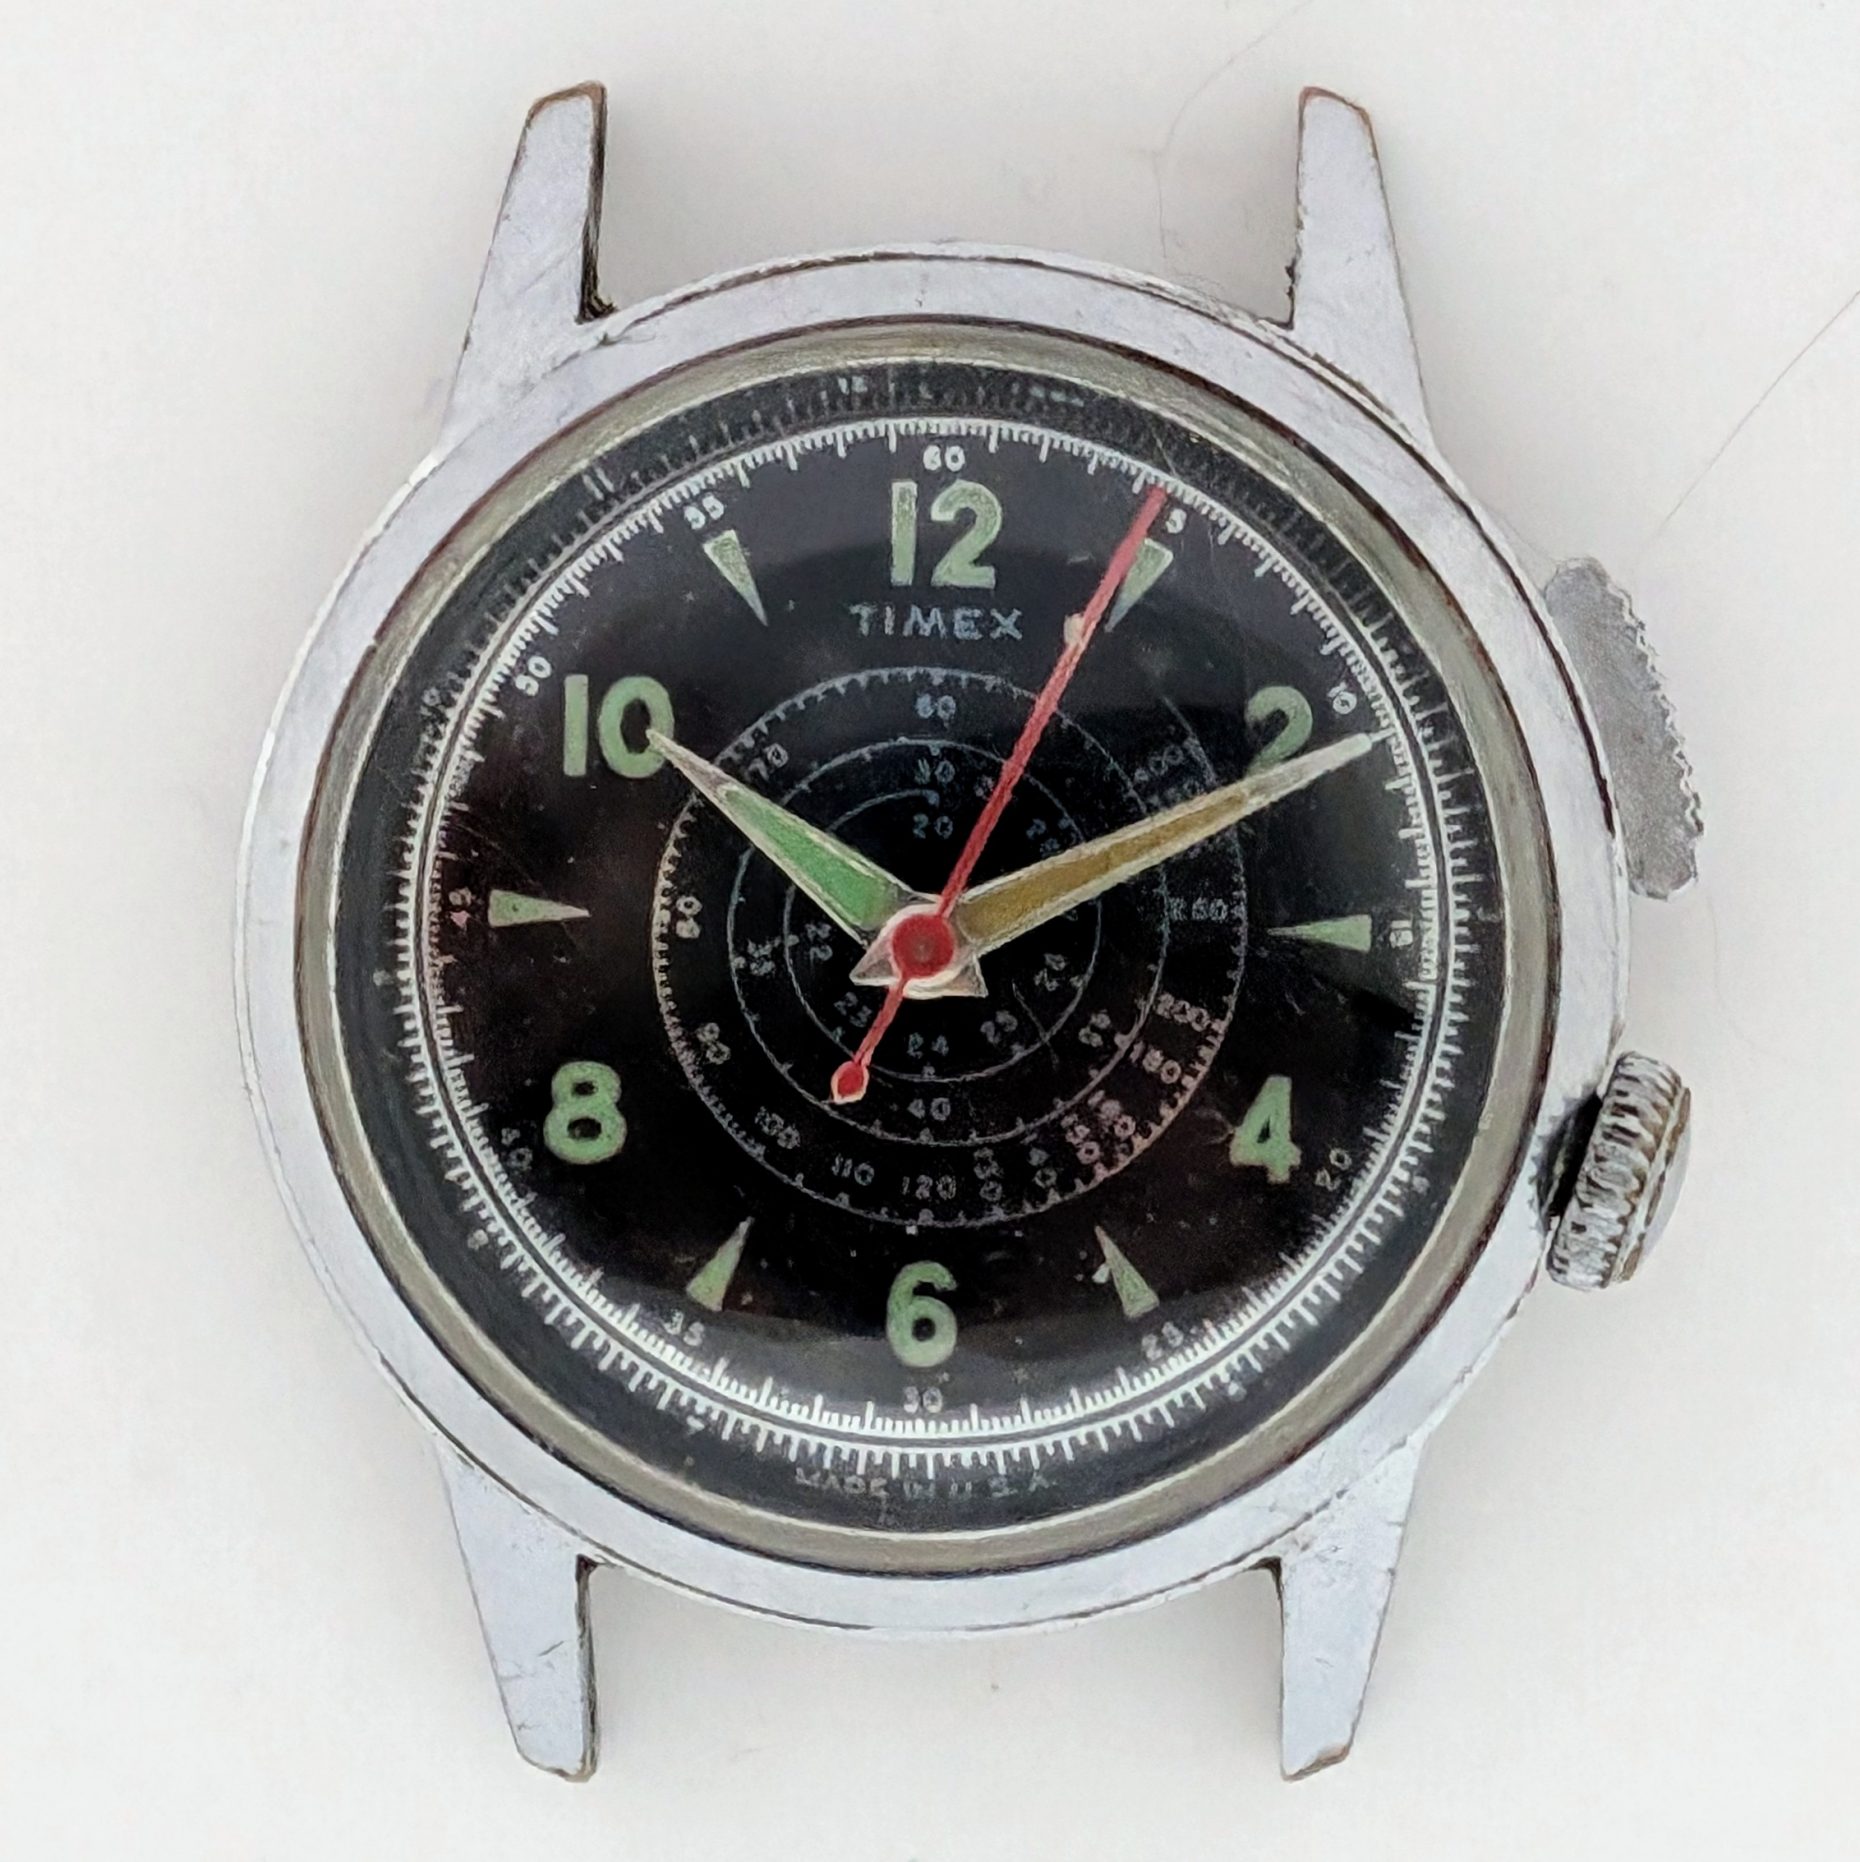 Timex Southampton 1237-2259 1959